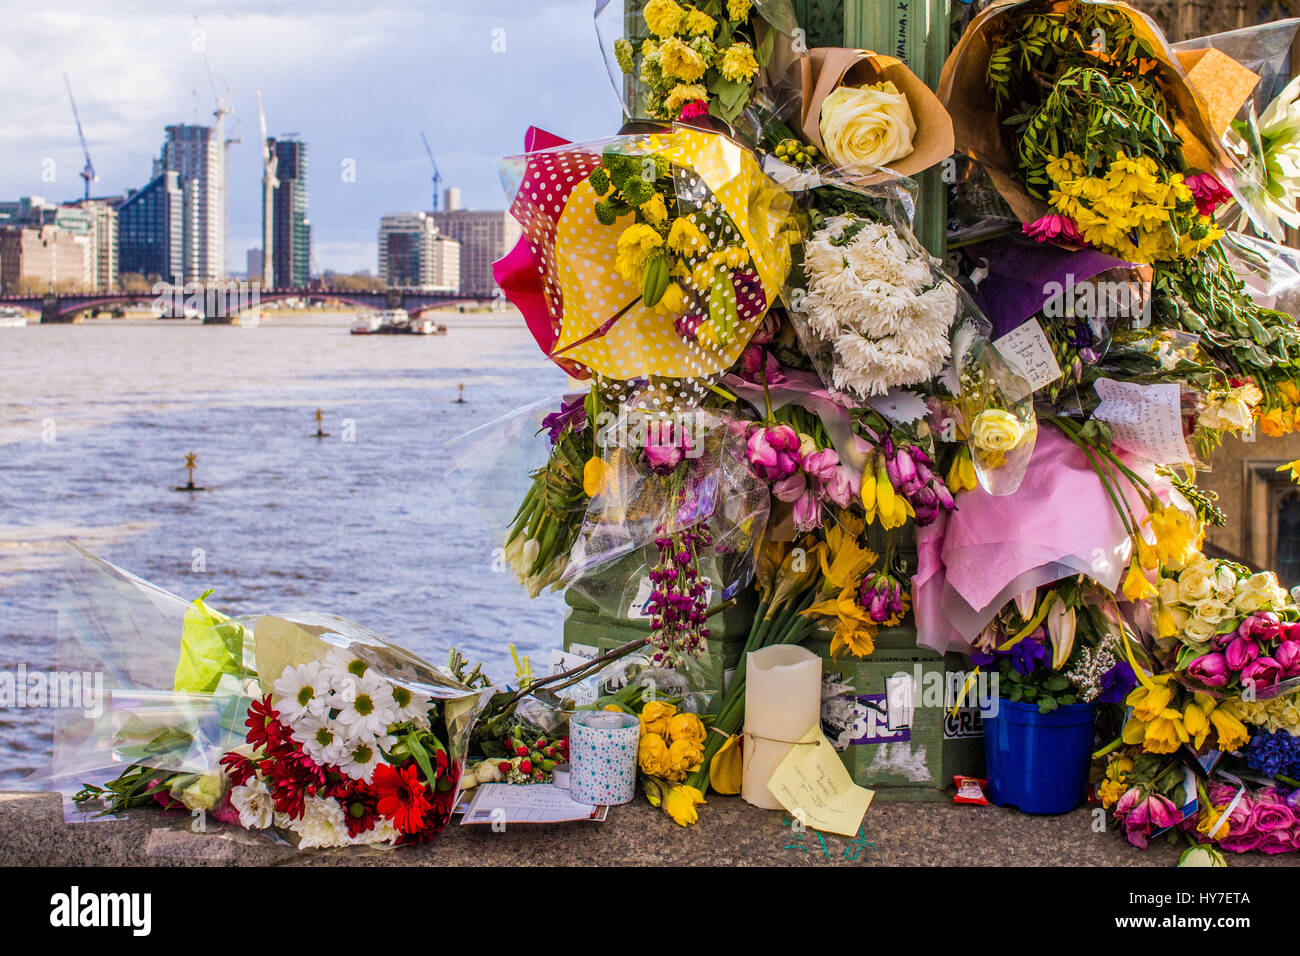 Omaggio floreale sul Westminster Bridge di Londra dopo l attacco terroristico in marzo 17. Immagine 17 apr. Foto Stock